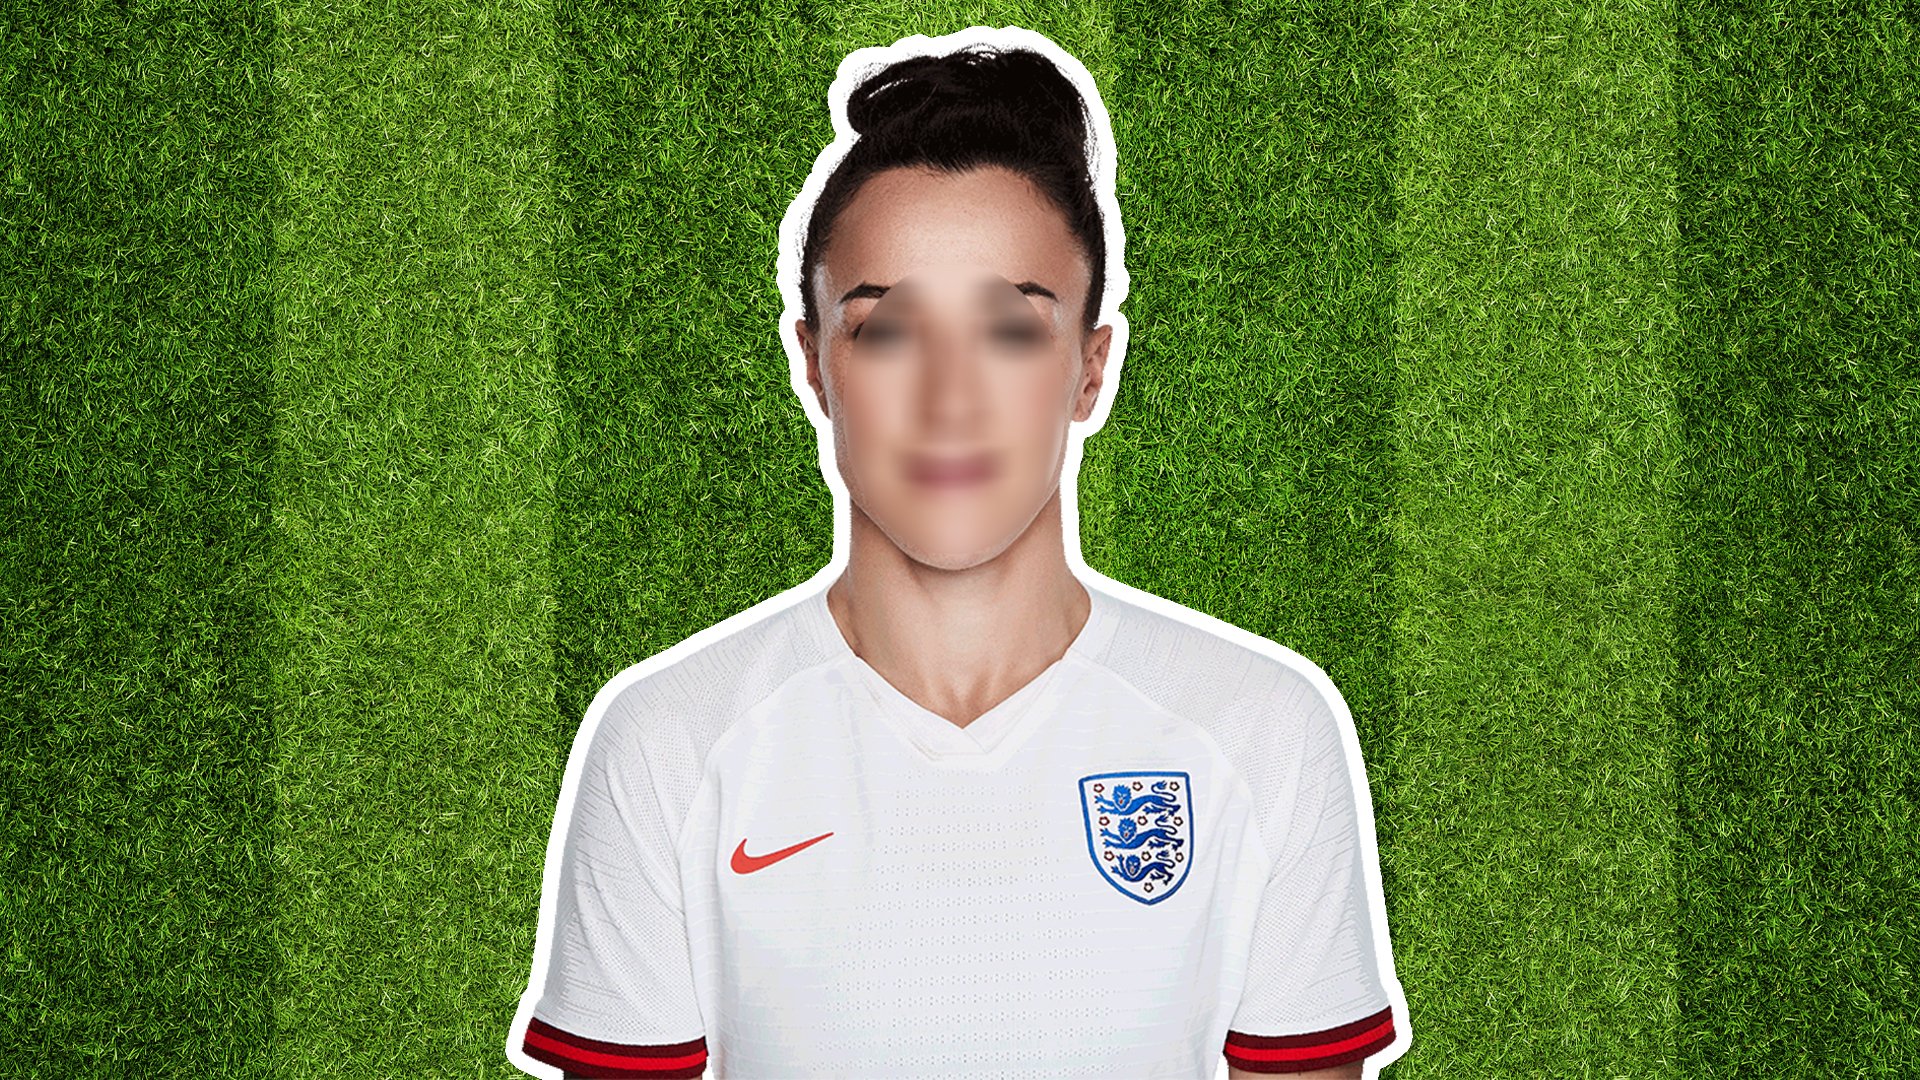 England player